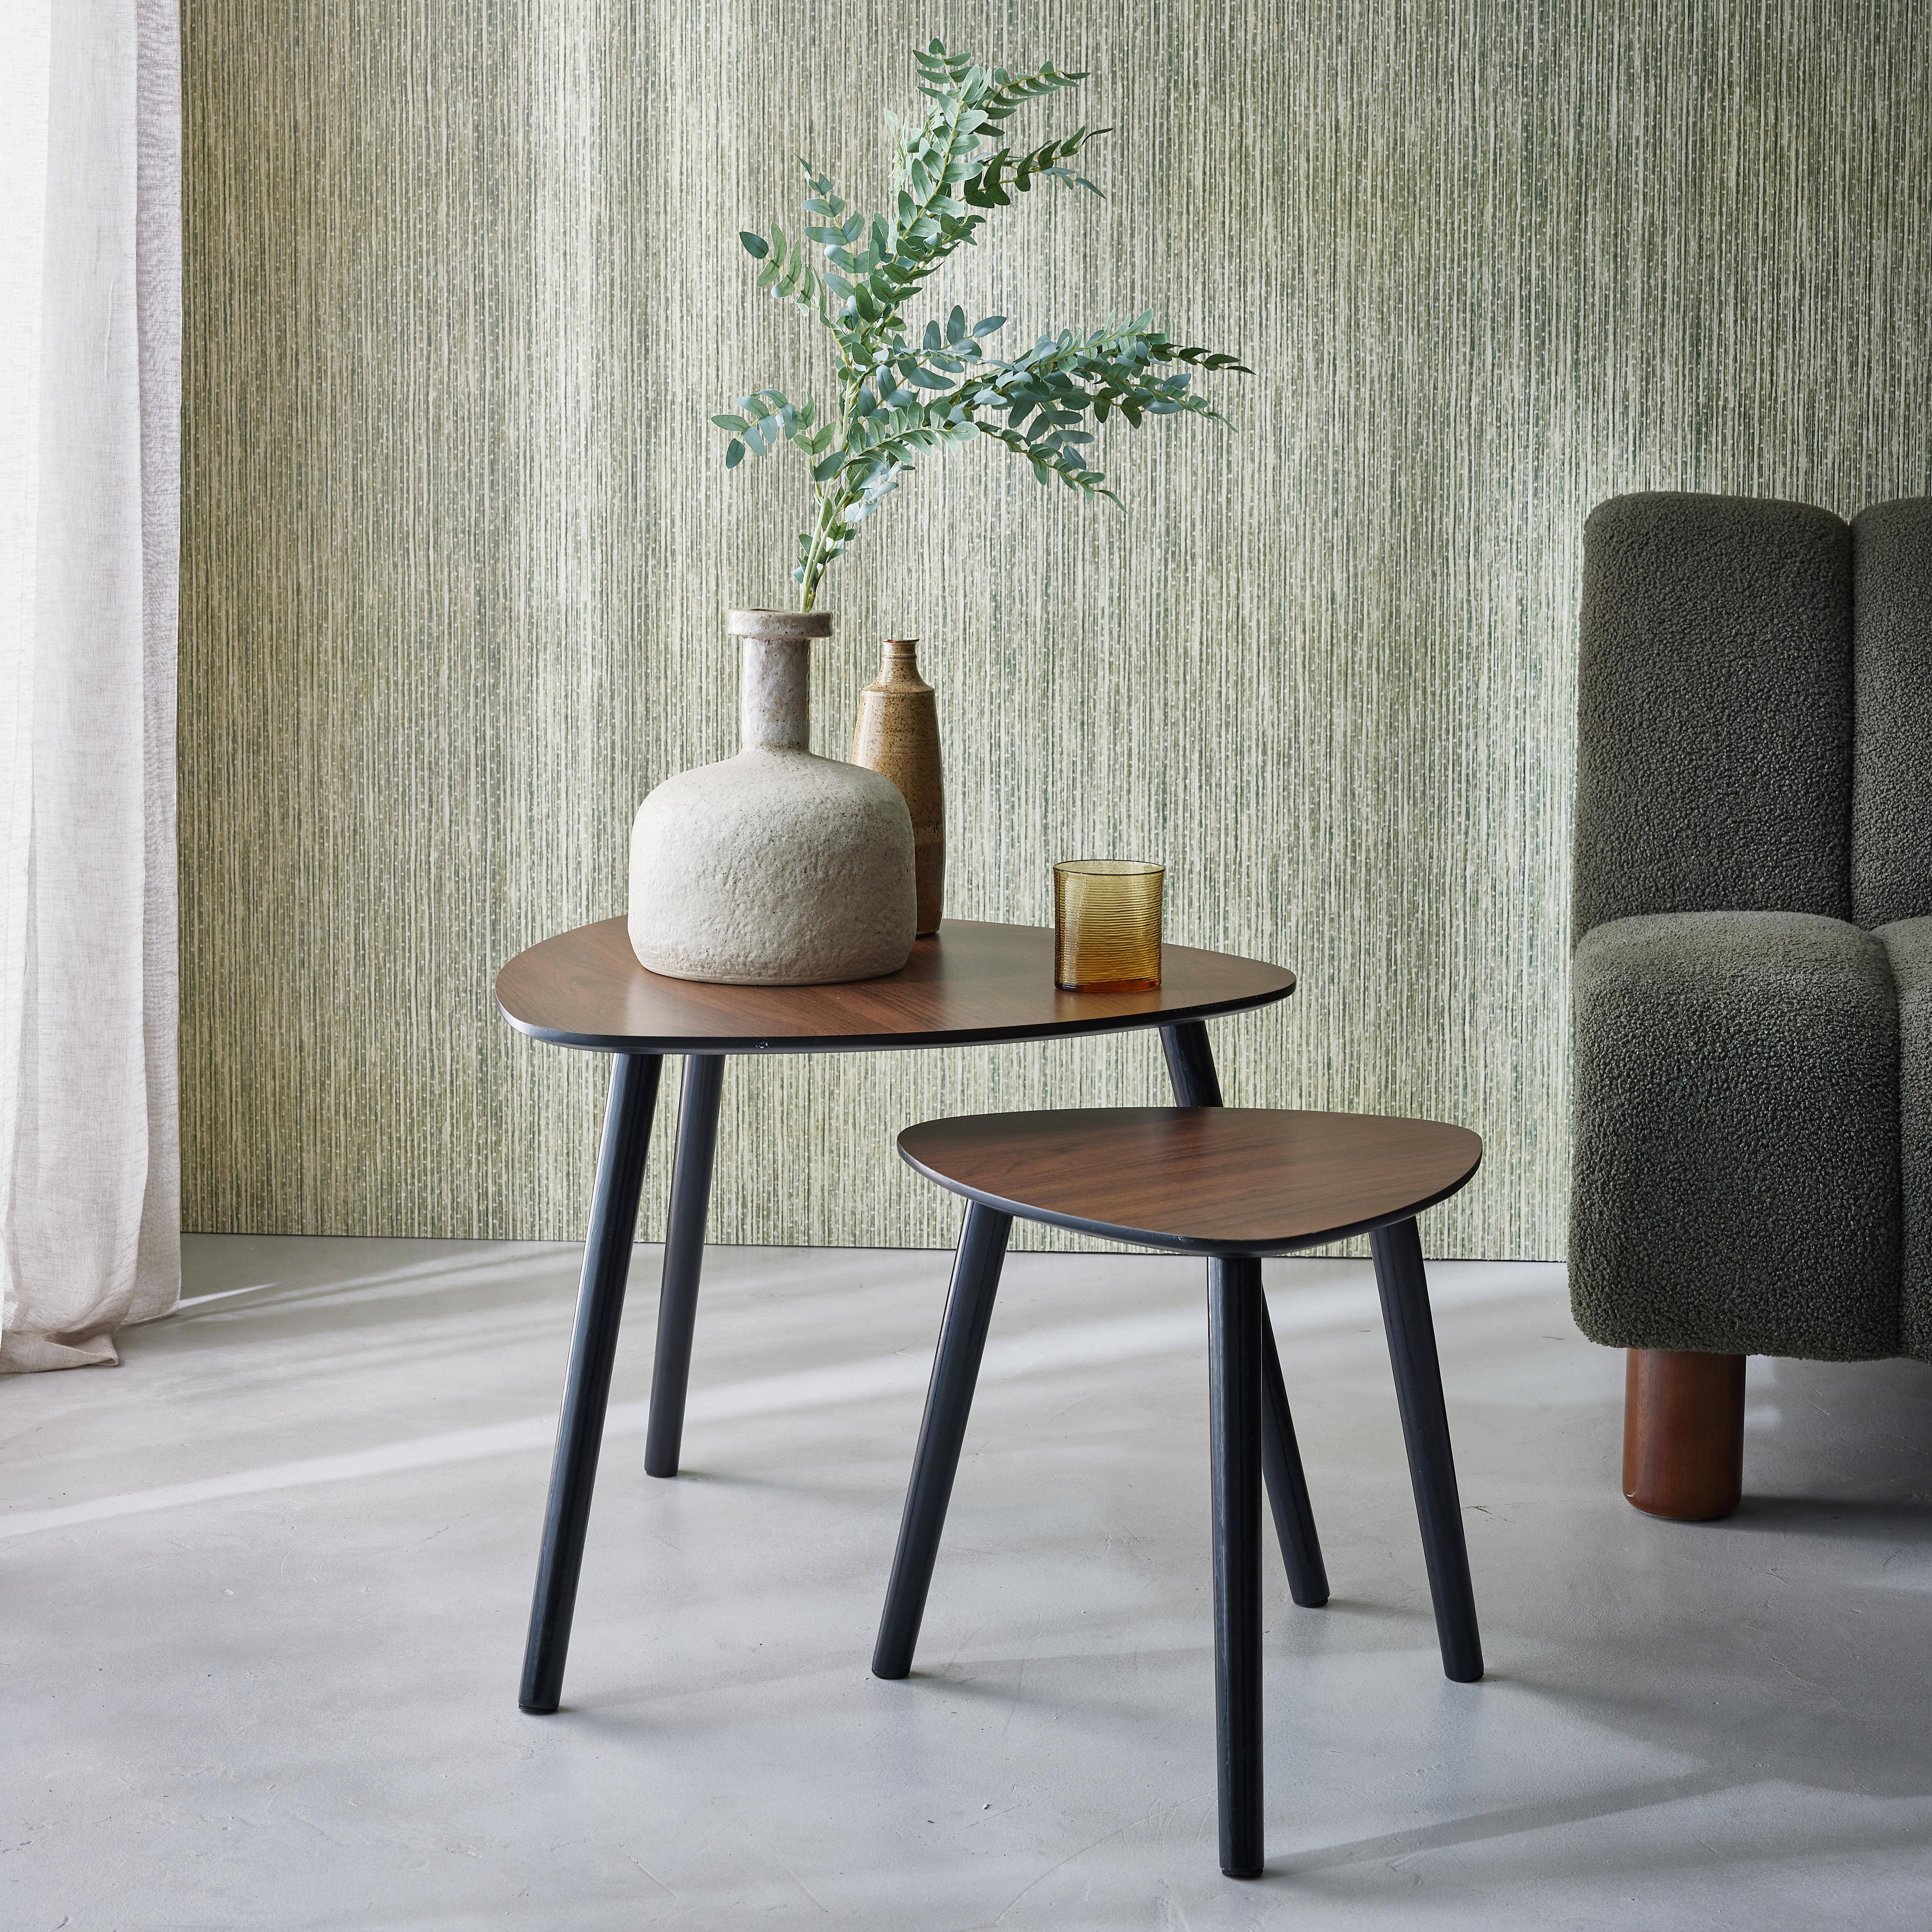 Set van 2 salontafels in Scandinavische stijl in walnootkleurig MDF-decor Photo1